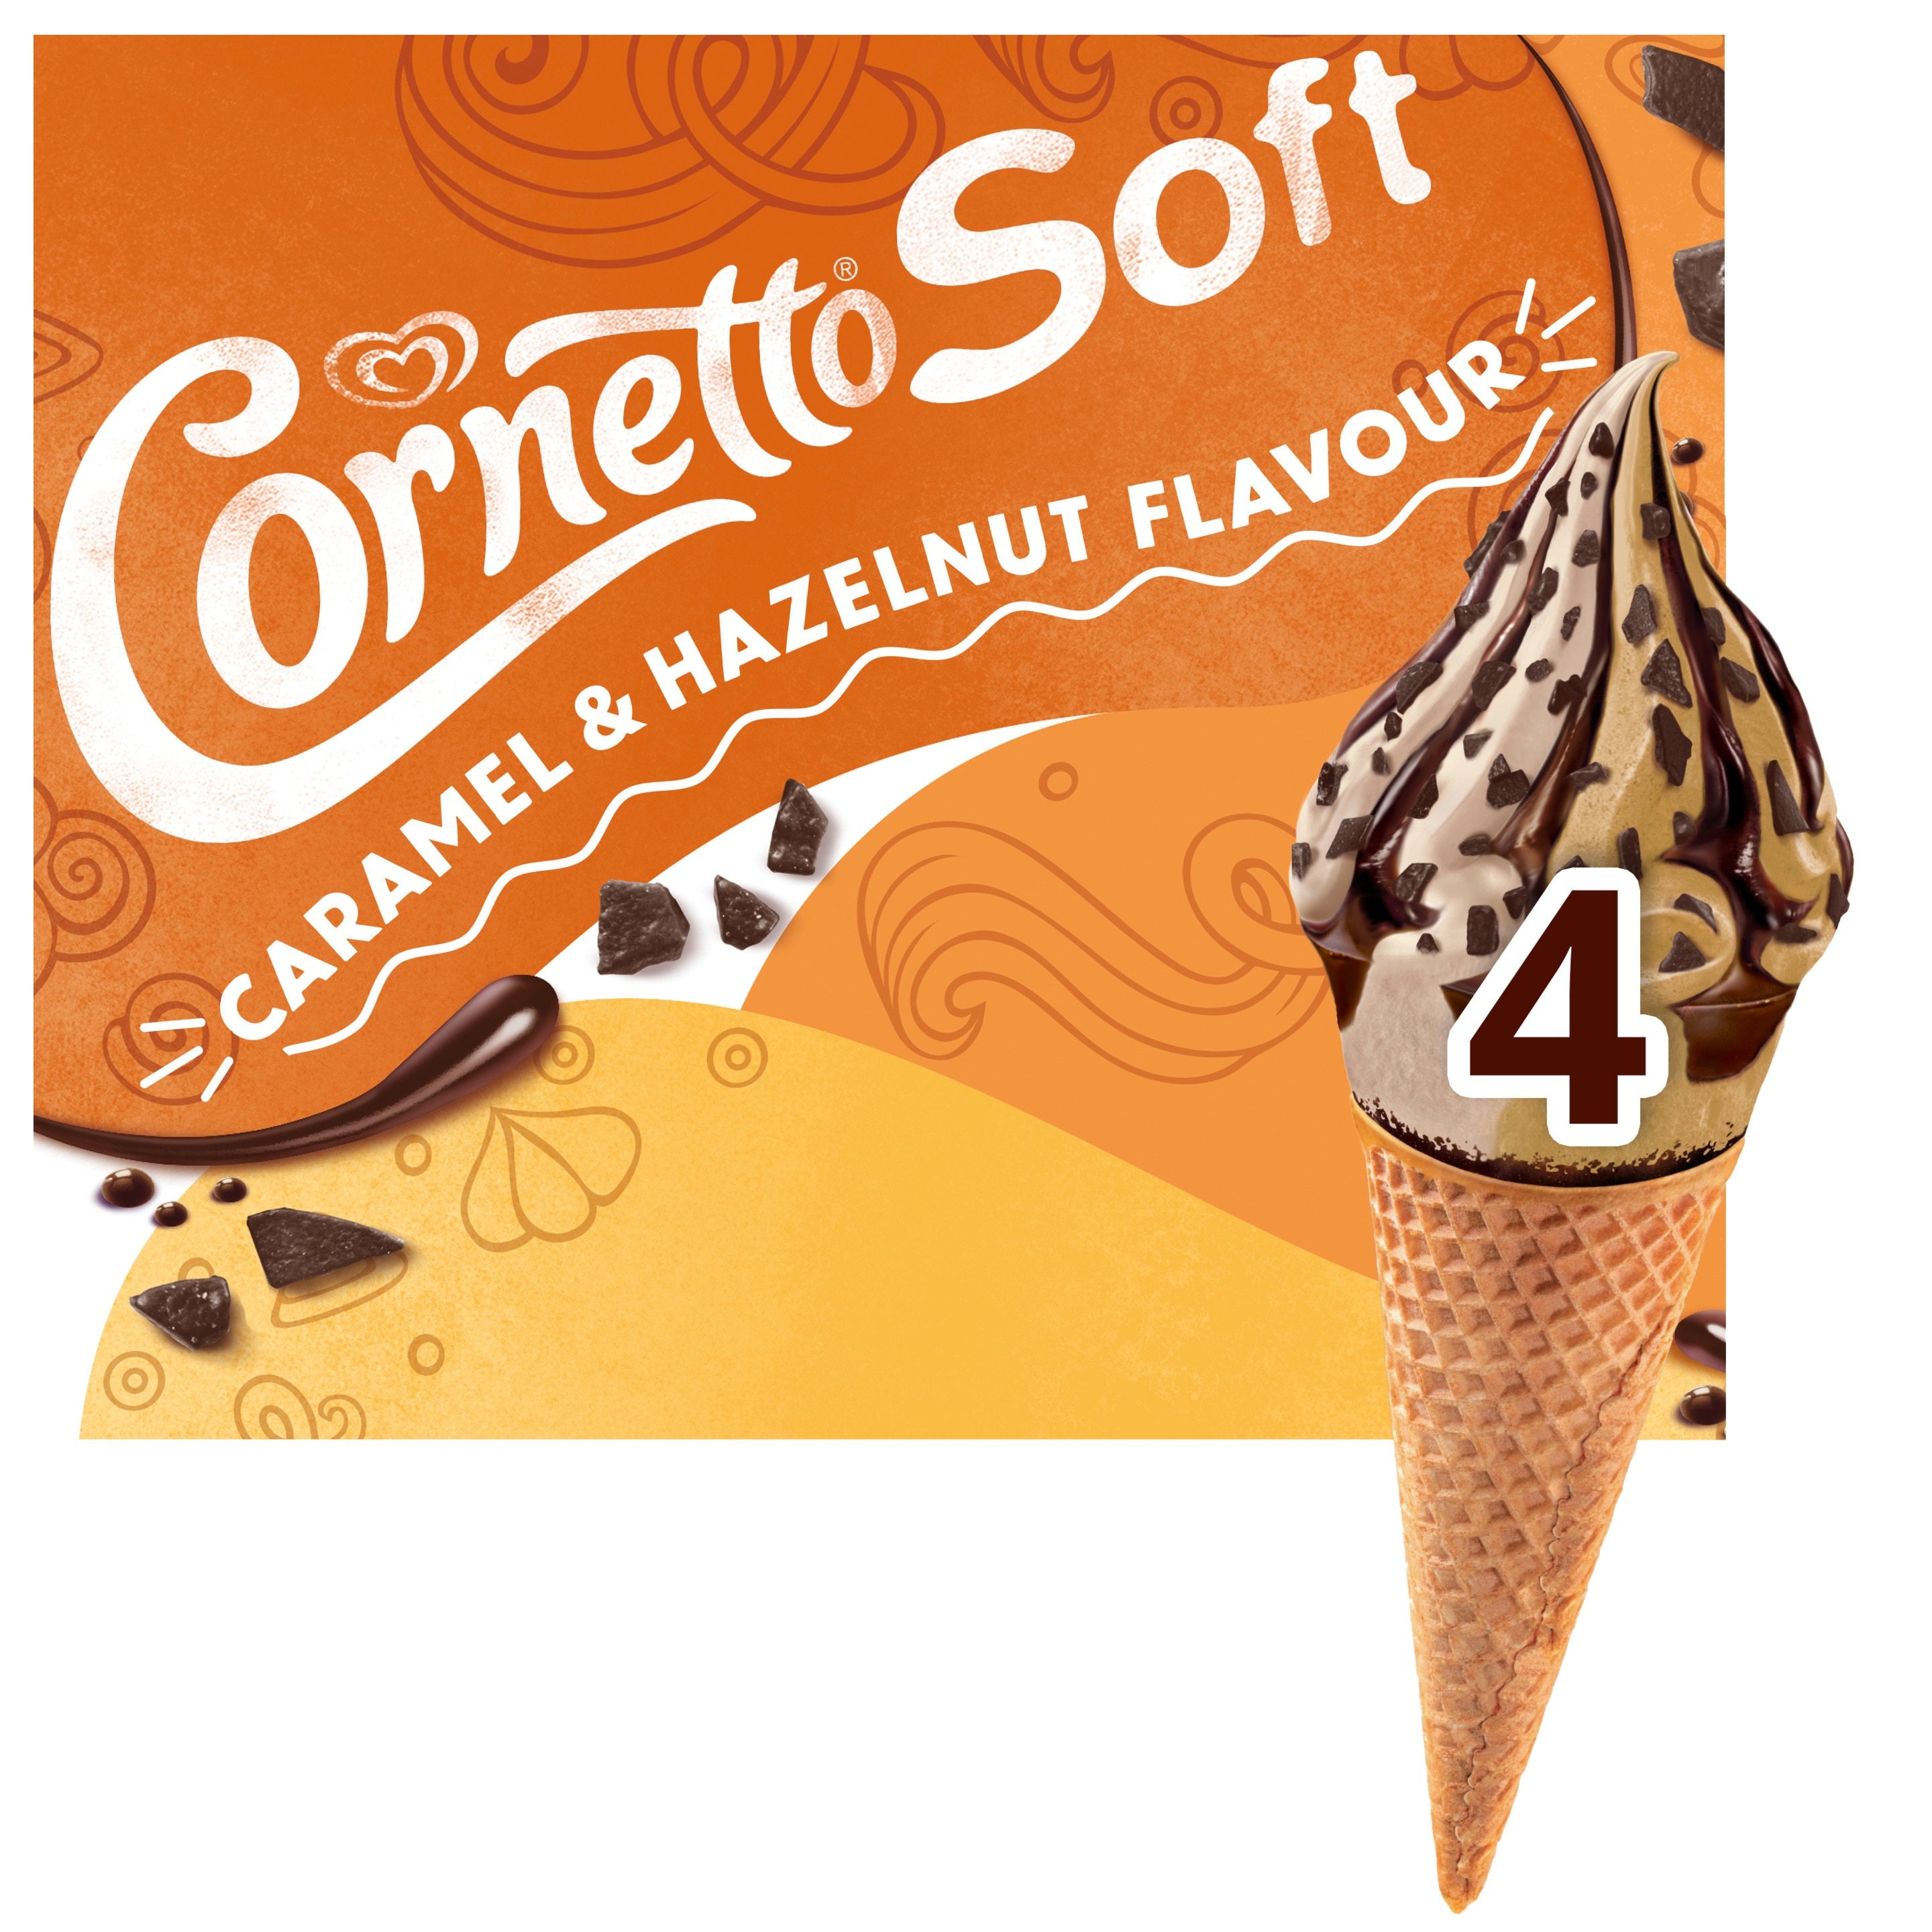 Cornetto Soft Caramel & Hazelnut Flavor 4 x 140 ml